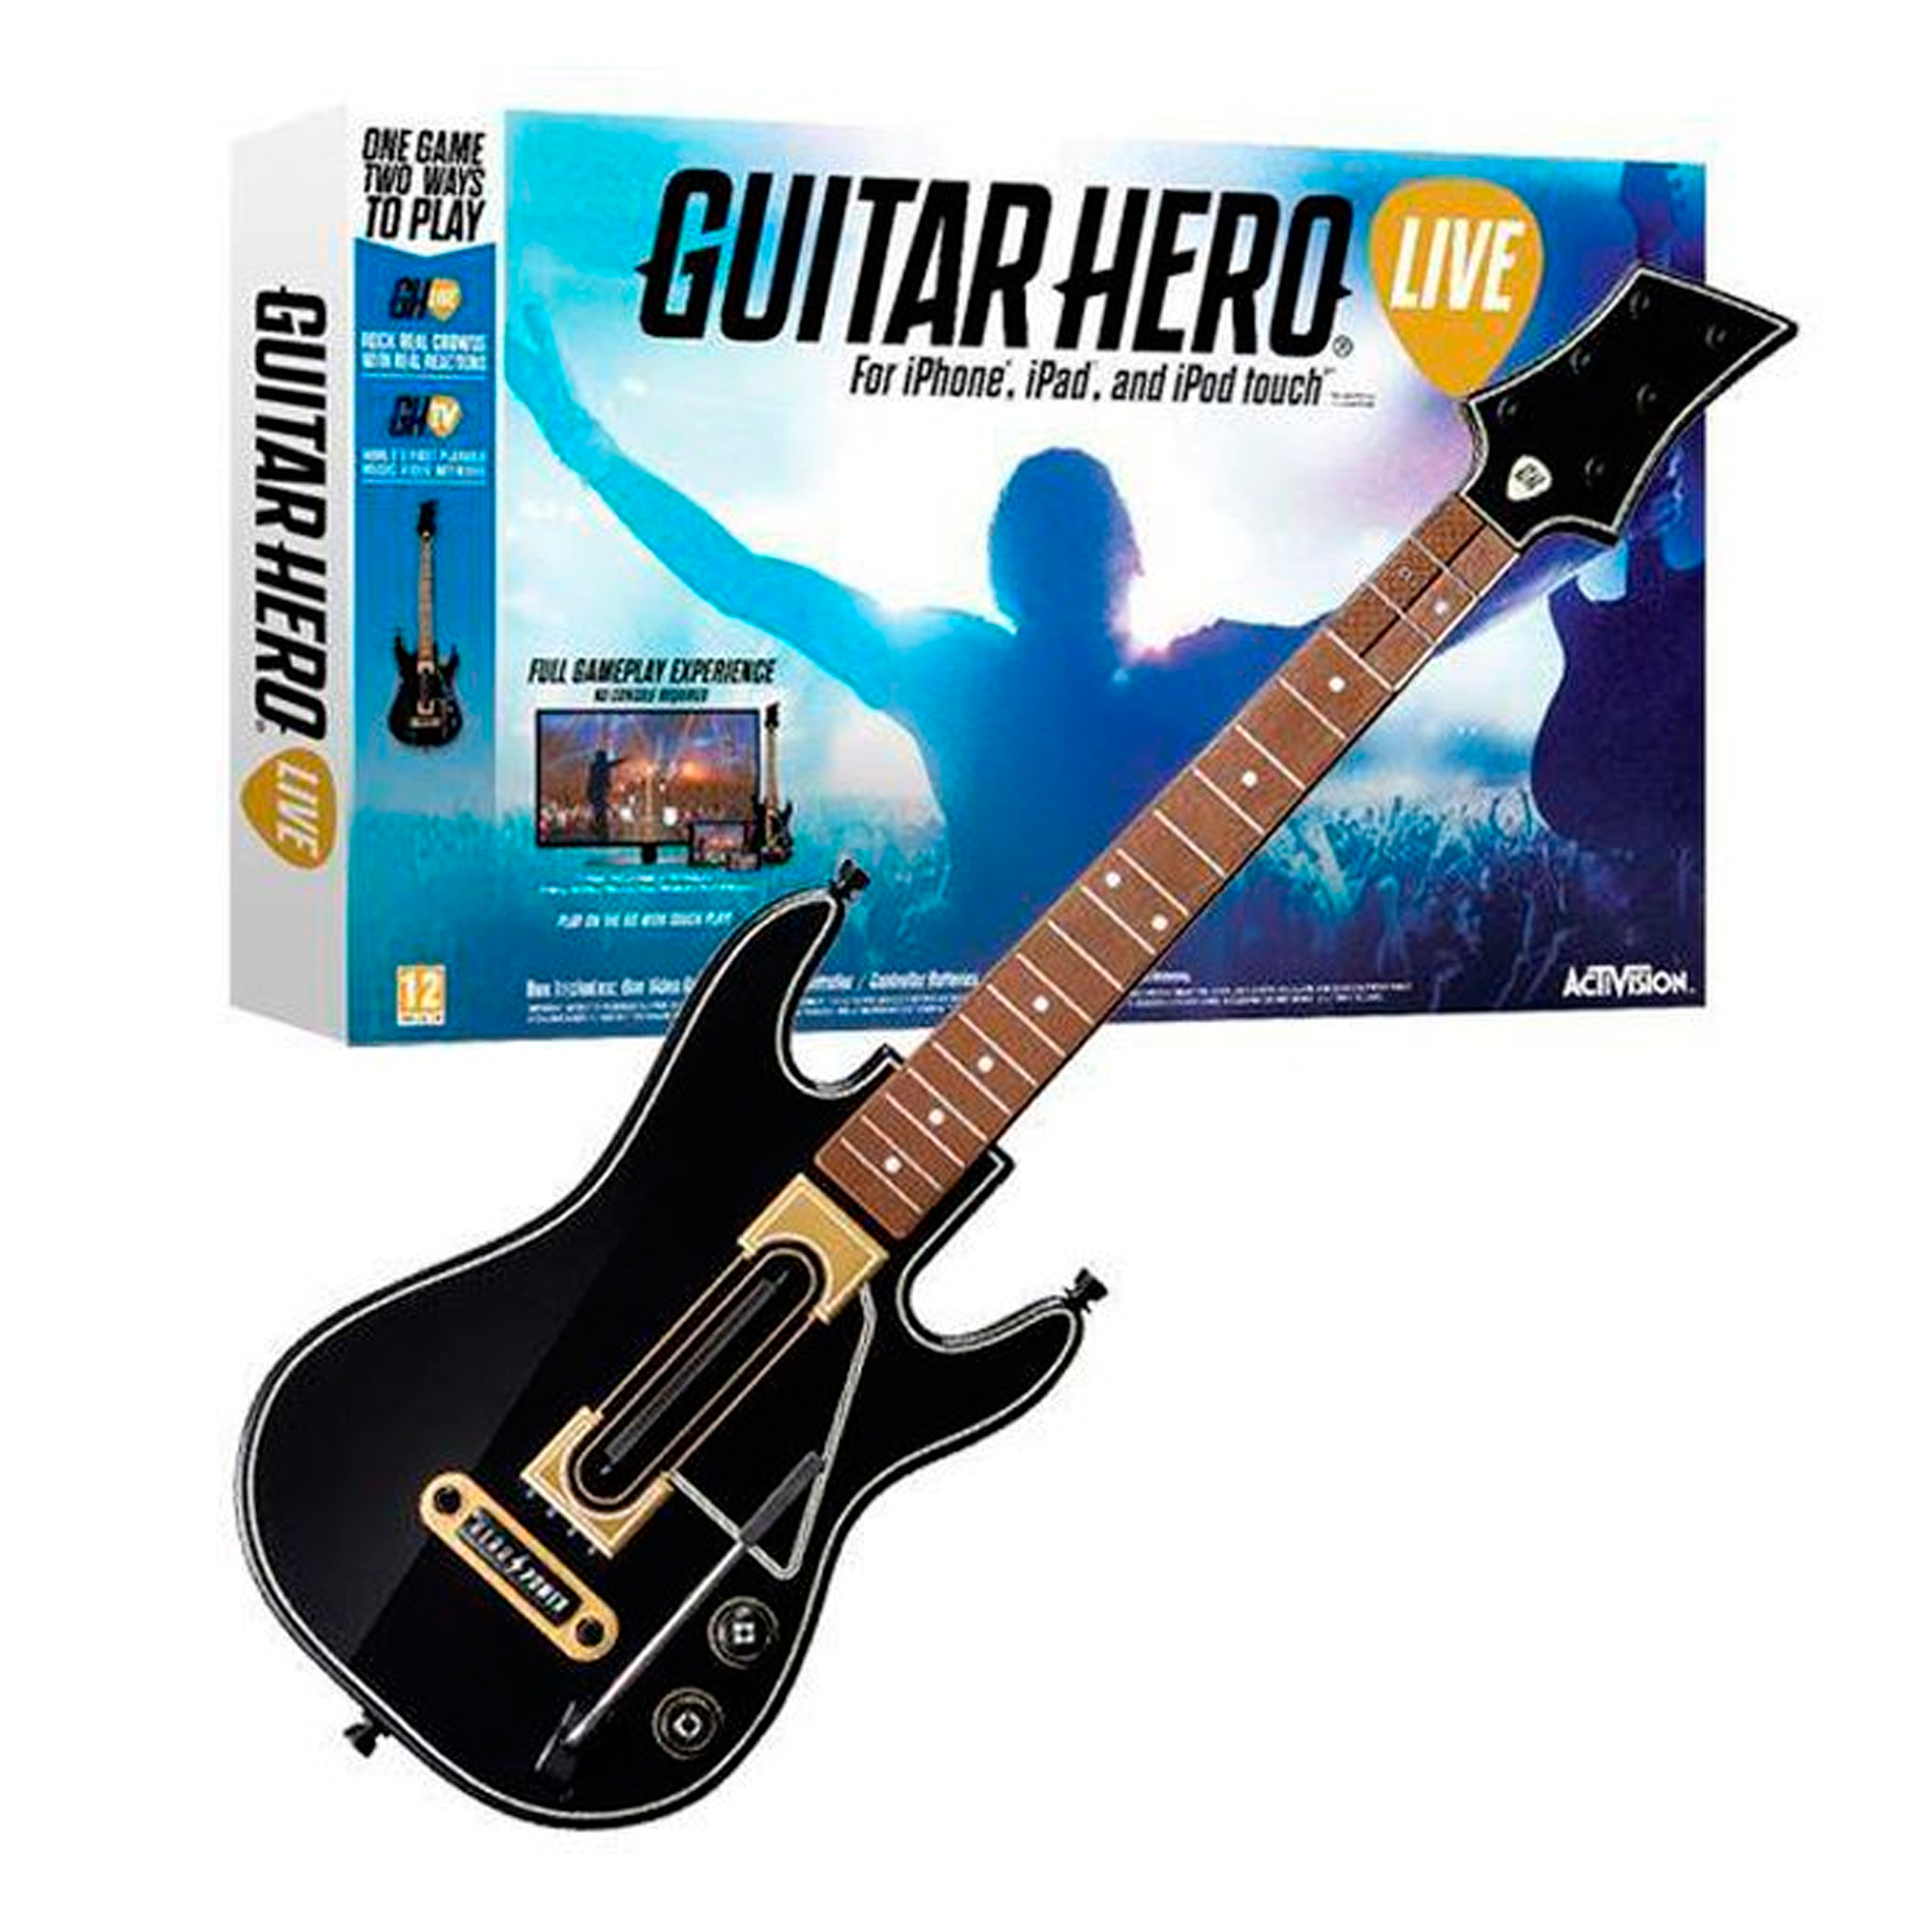 Juego Oficial Guitar Hero Live Incluye Guitarra 